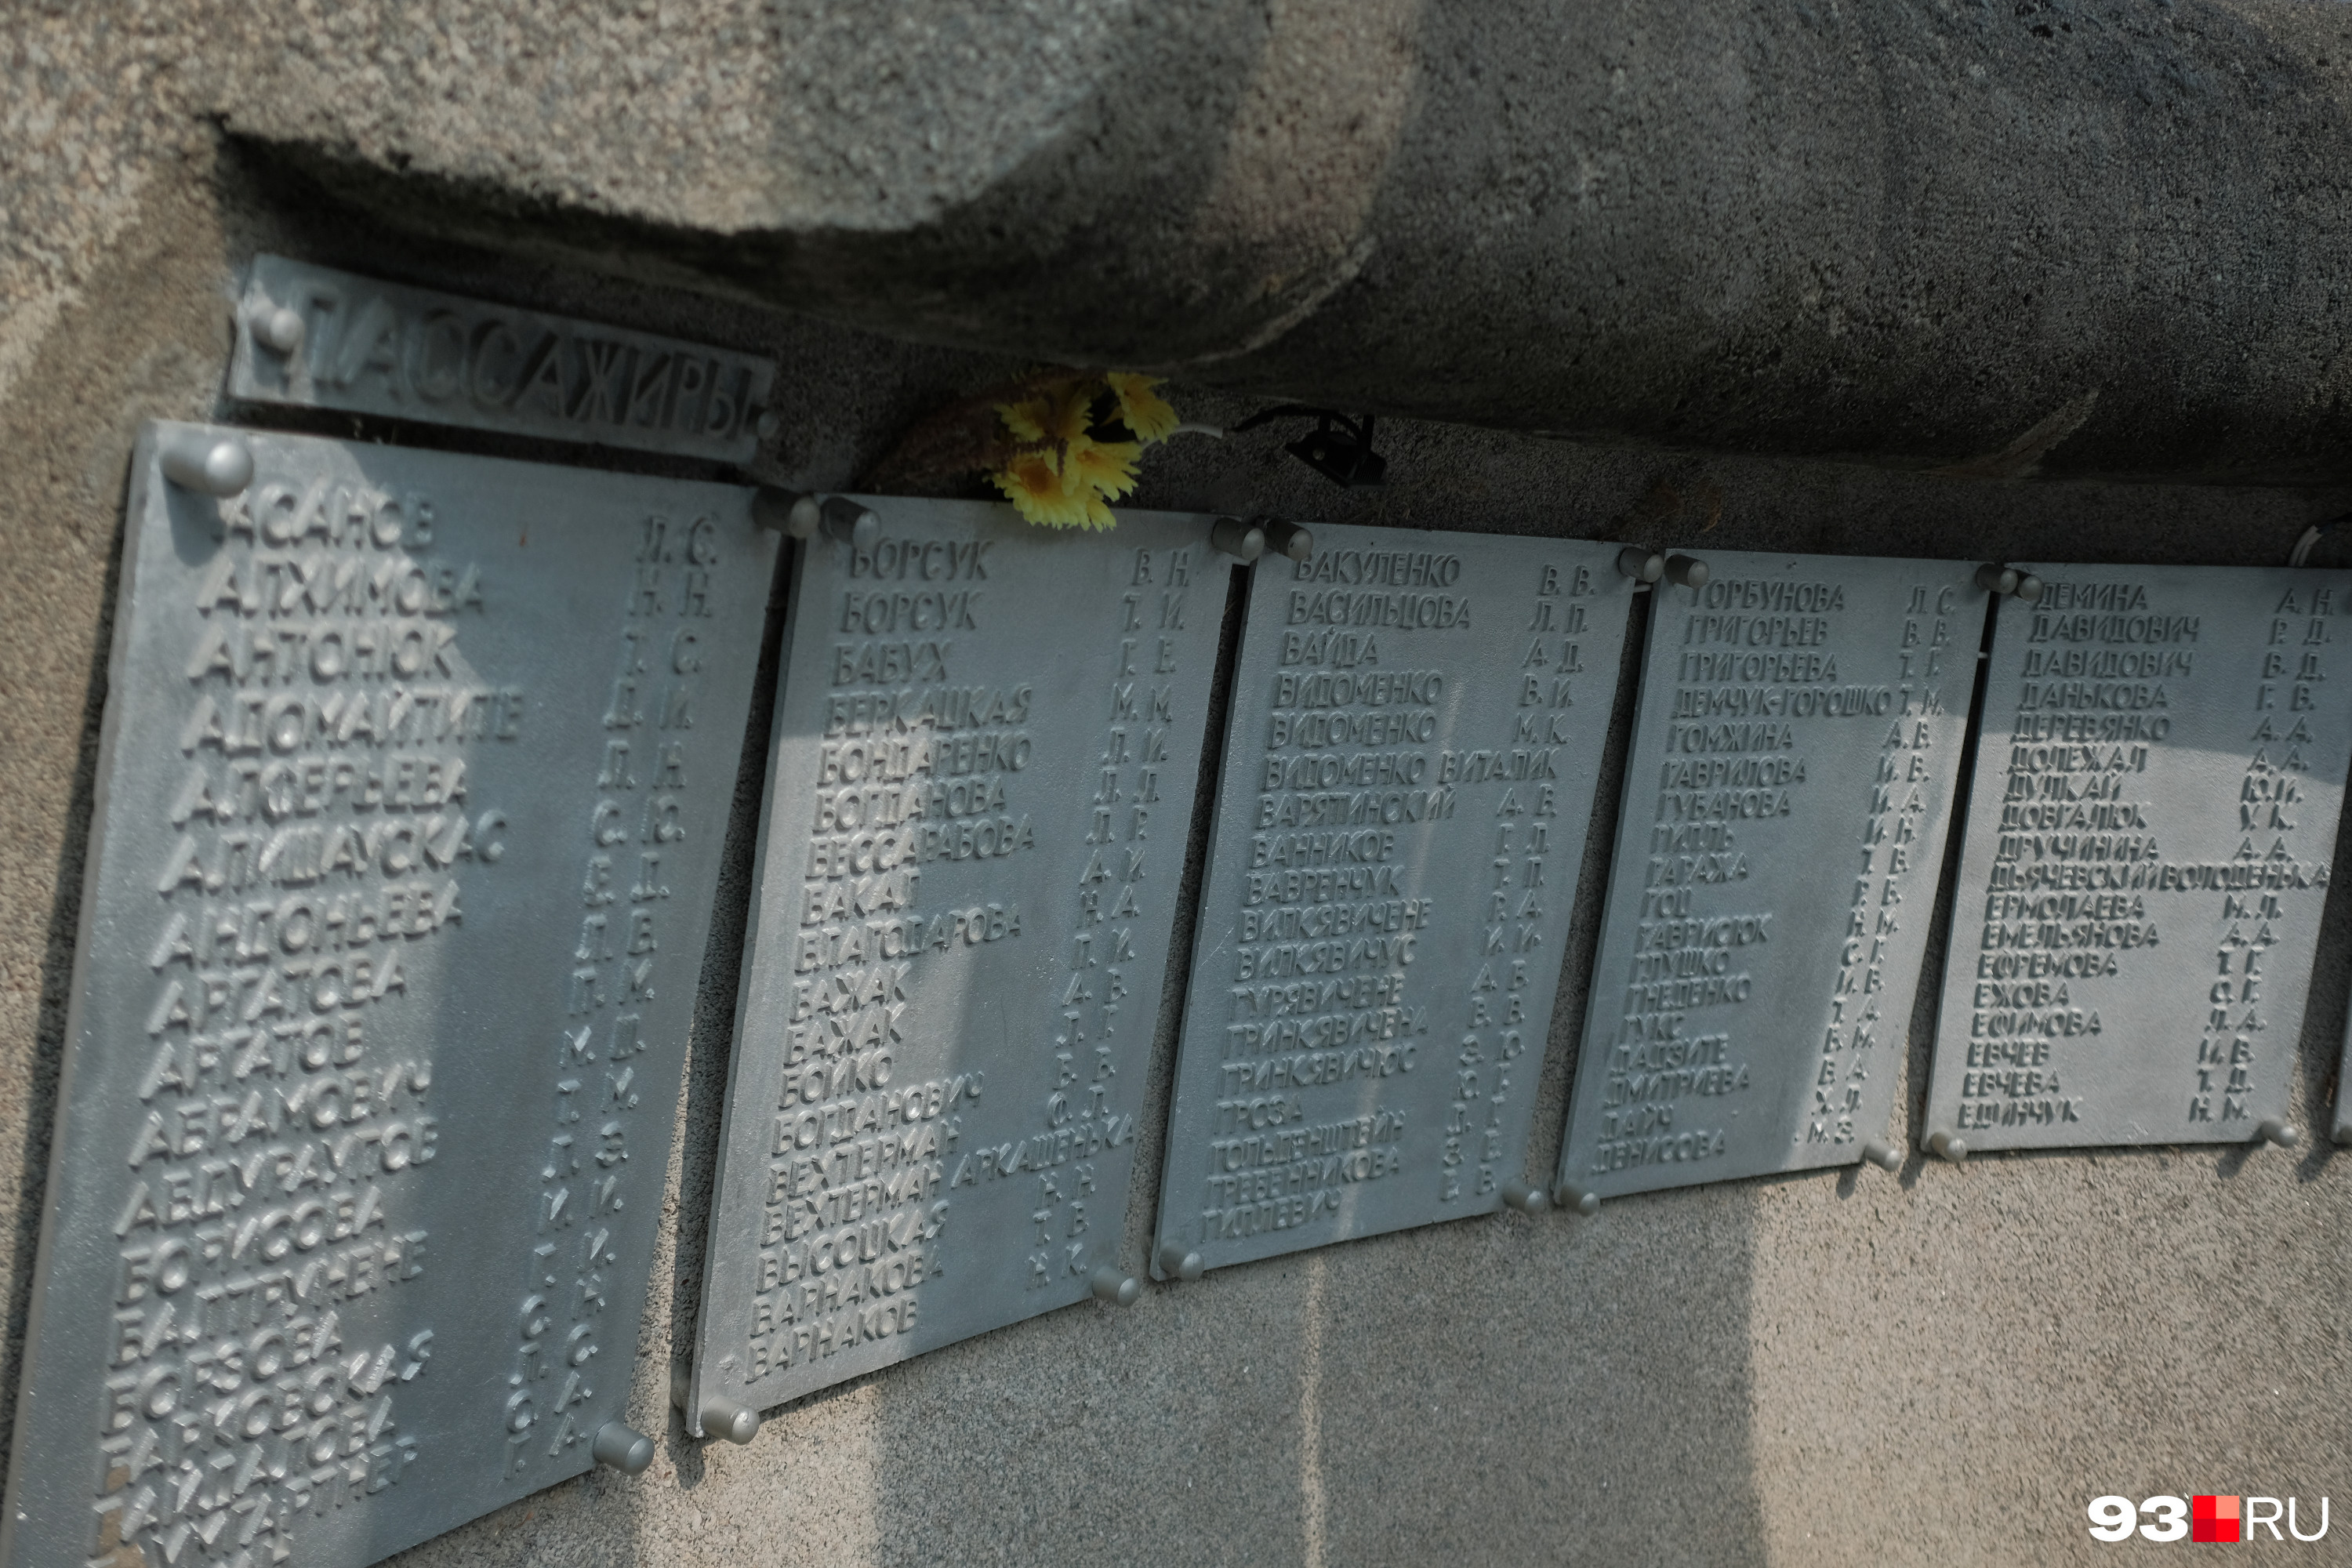 Трубы окаймляет волна из железобетона, к внутренней стороне прикреплены таблички с именами погибших